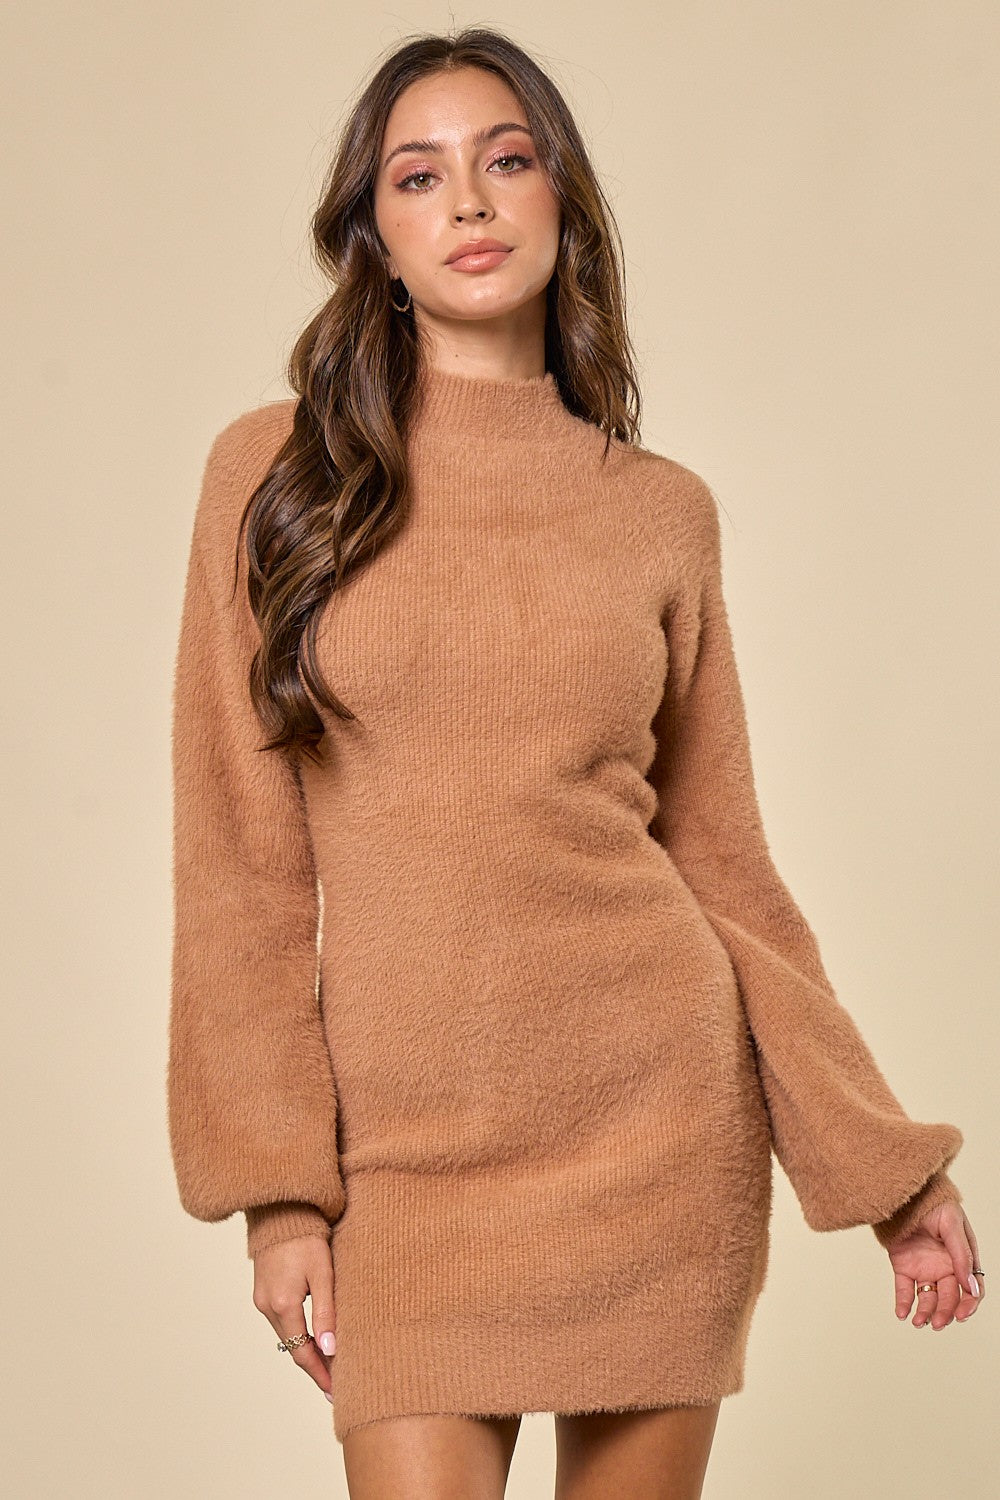 The Seasons Sweater Dress in Tan FINAL SALE